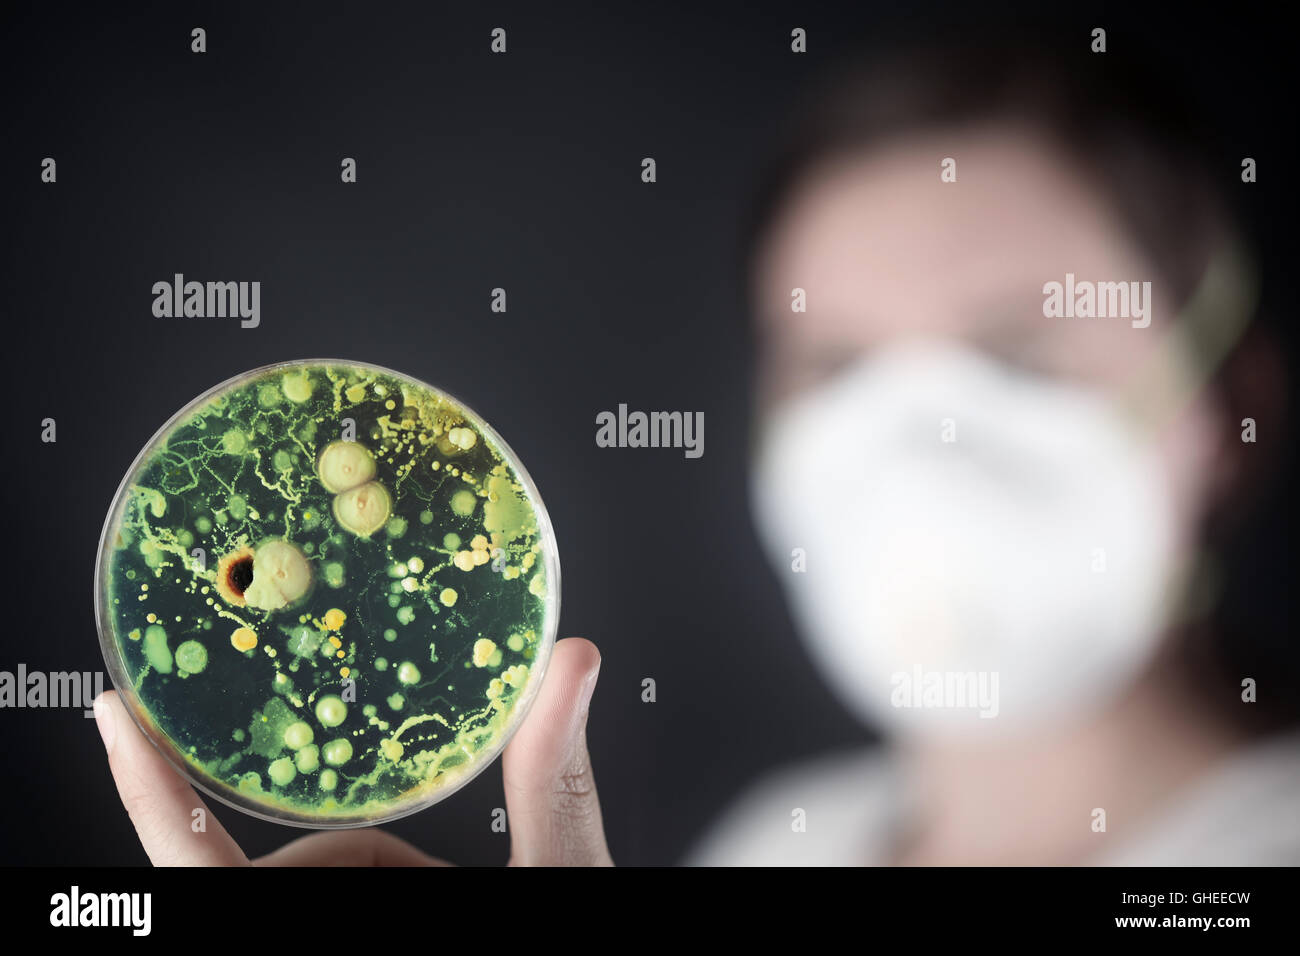 Examining bacteria in a petri dish Stock Photo